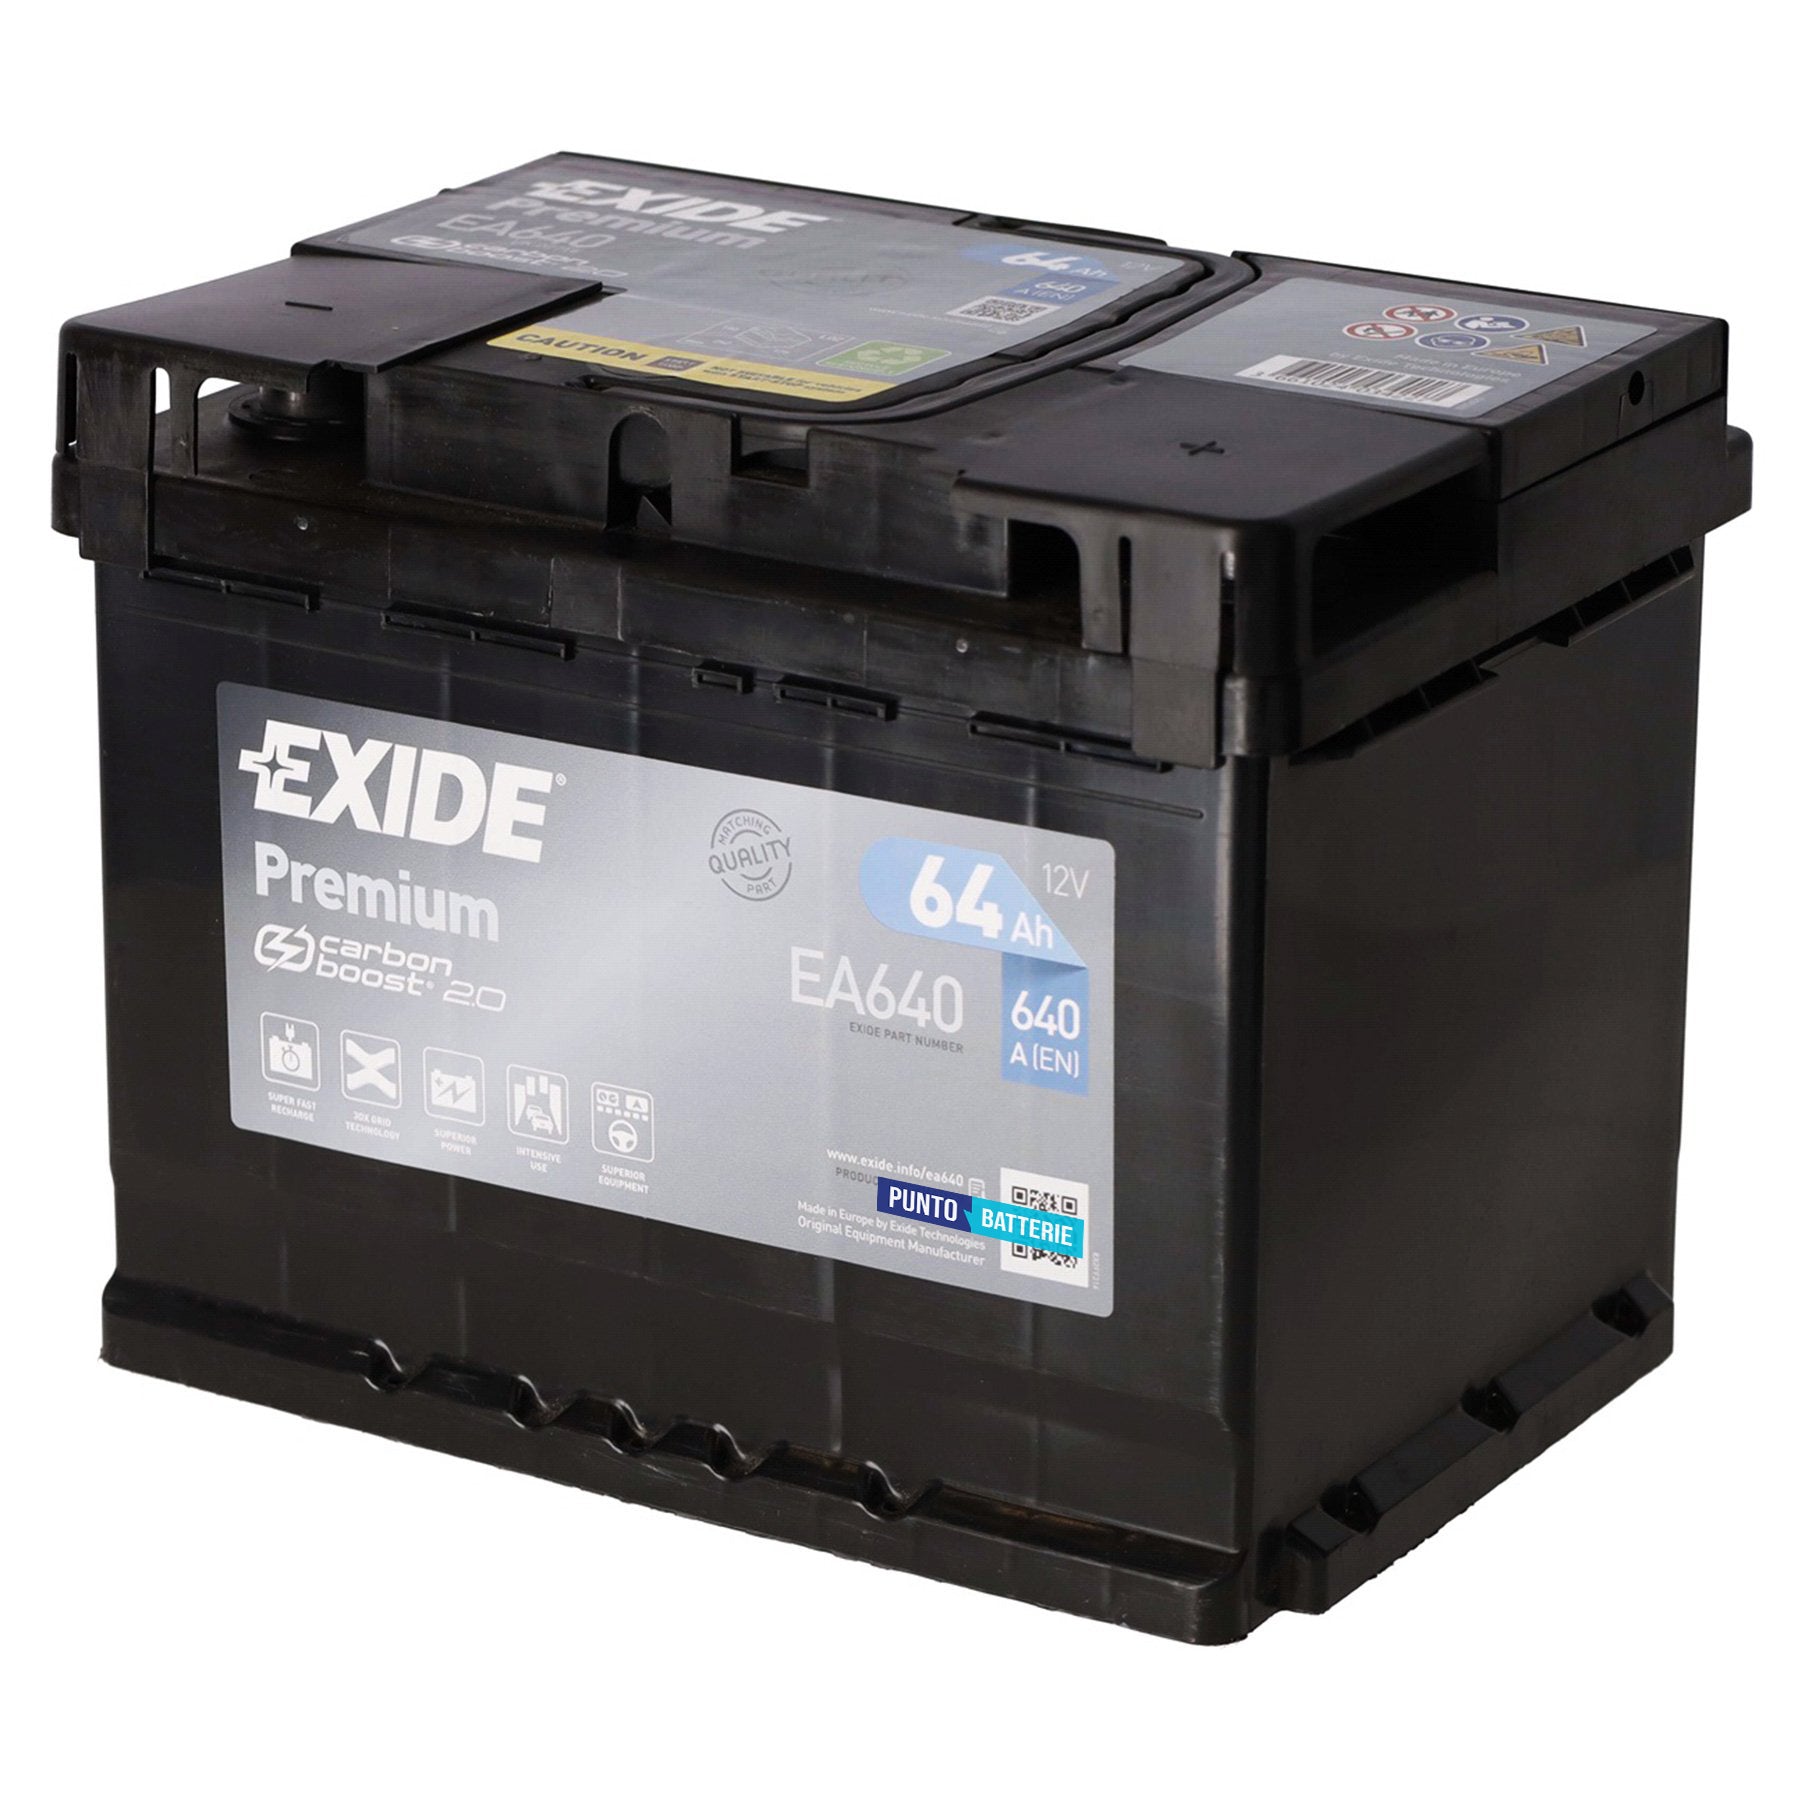 Batteria originale Exide Premium EA640, dimensioni 242 x 175 x 190, polo positivo a destra, 12 volt, 64 amperora, 640 ampere. Batteria per auto e veicoli leggeri.